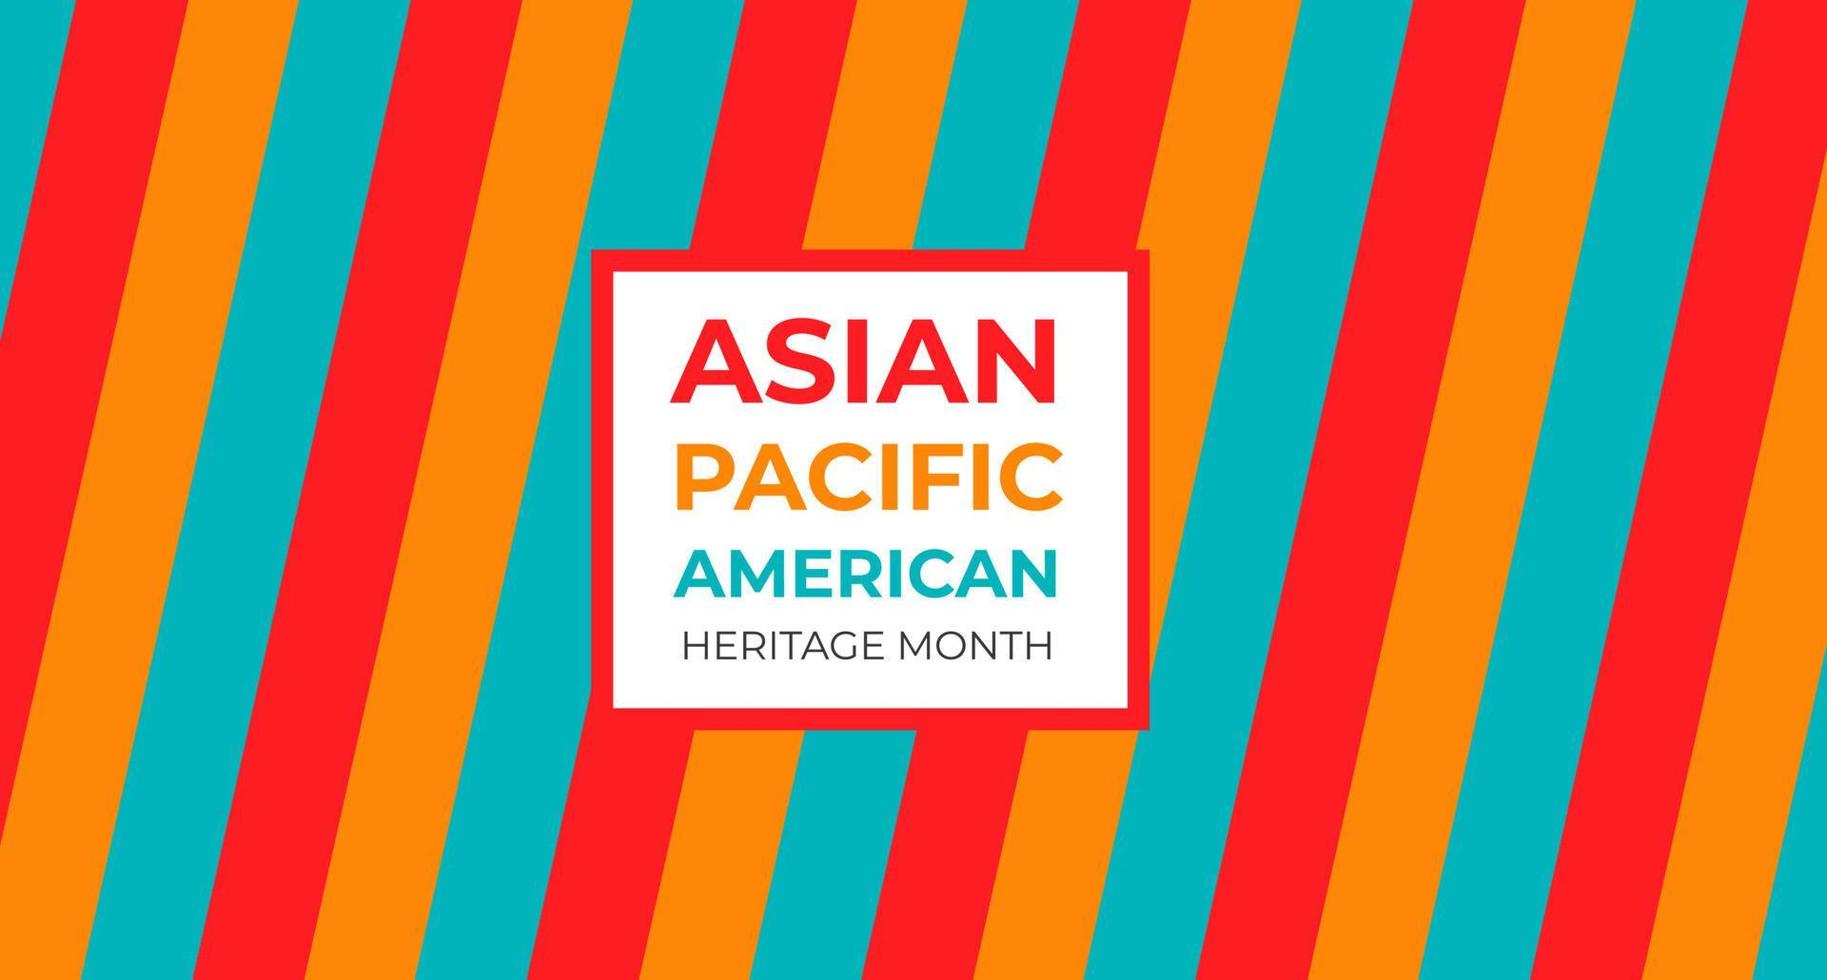 Aziatische Amerikaanse en Pacific Islander Heritage Month. vectorbanner voor sociale media, kaart, poster. illustratie met tekst, chinese lantaarn. aziatische pacific amerikaanse erfgoed maand achtergrond. vector